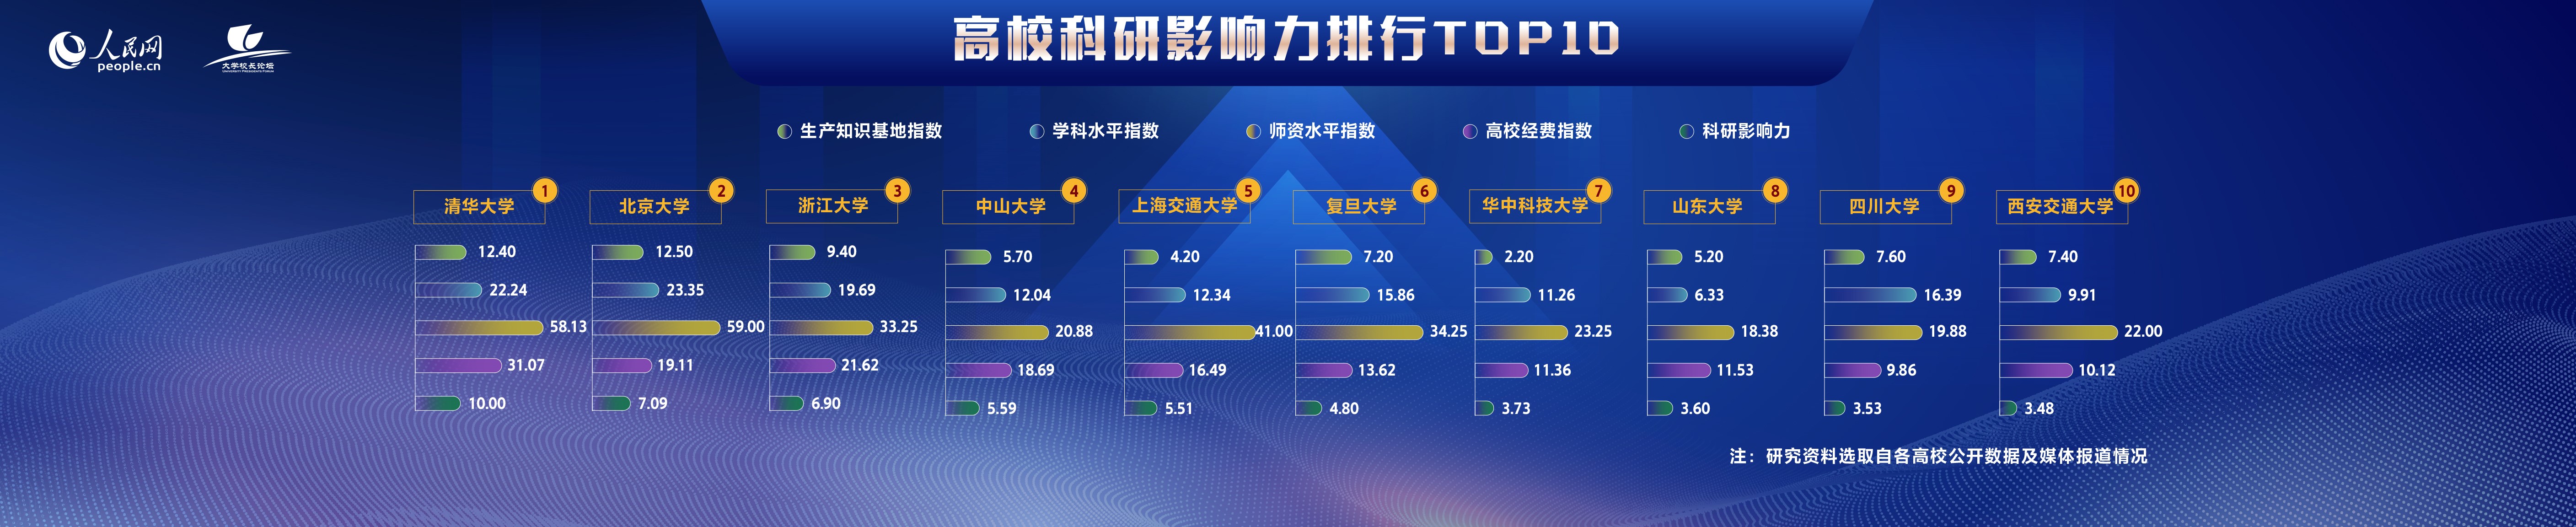 瘦身贴排行榜_2020年中国十大餐饮品牌排行榜